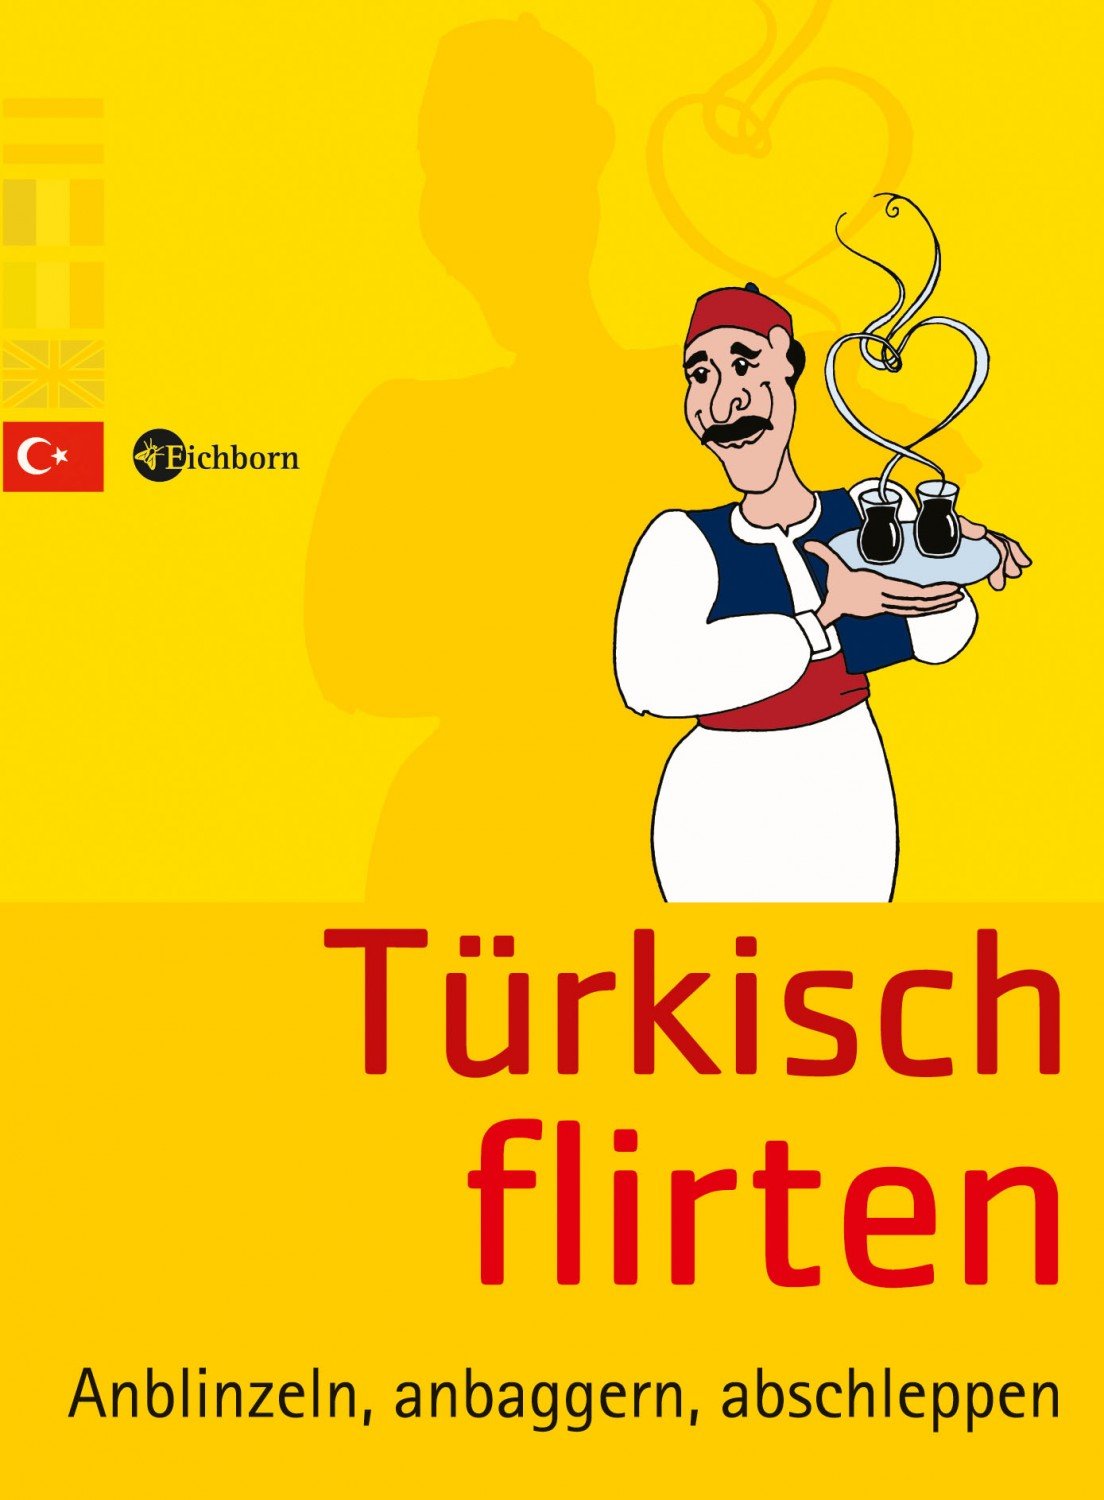 flört etmek - Deutsch Übersetzung - Türkisch Beispiele | Reverso Context